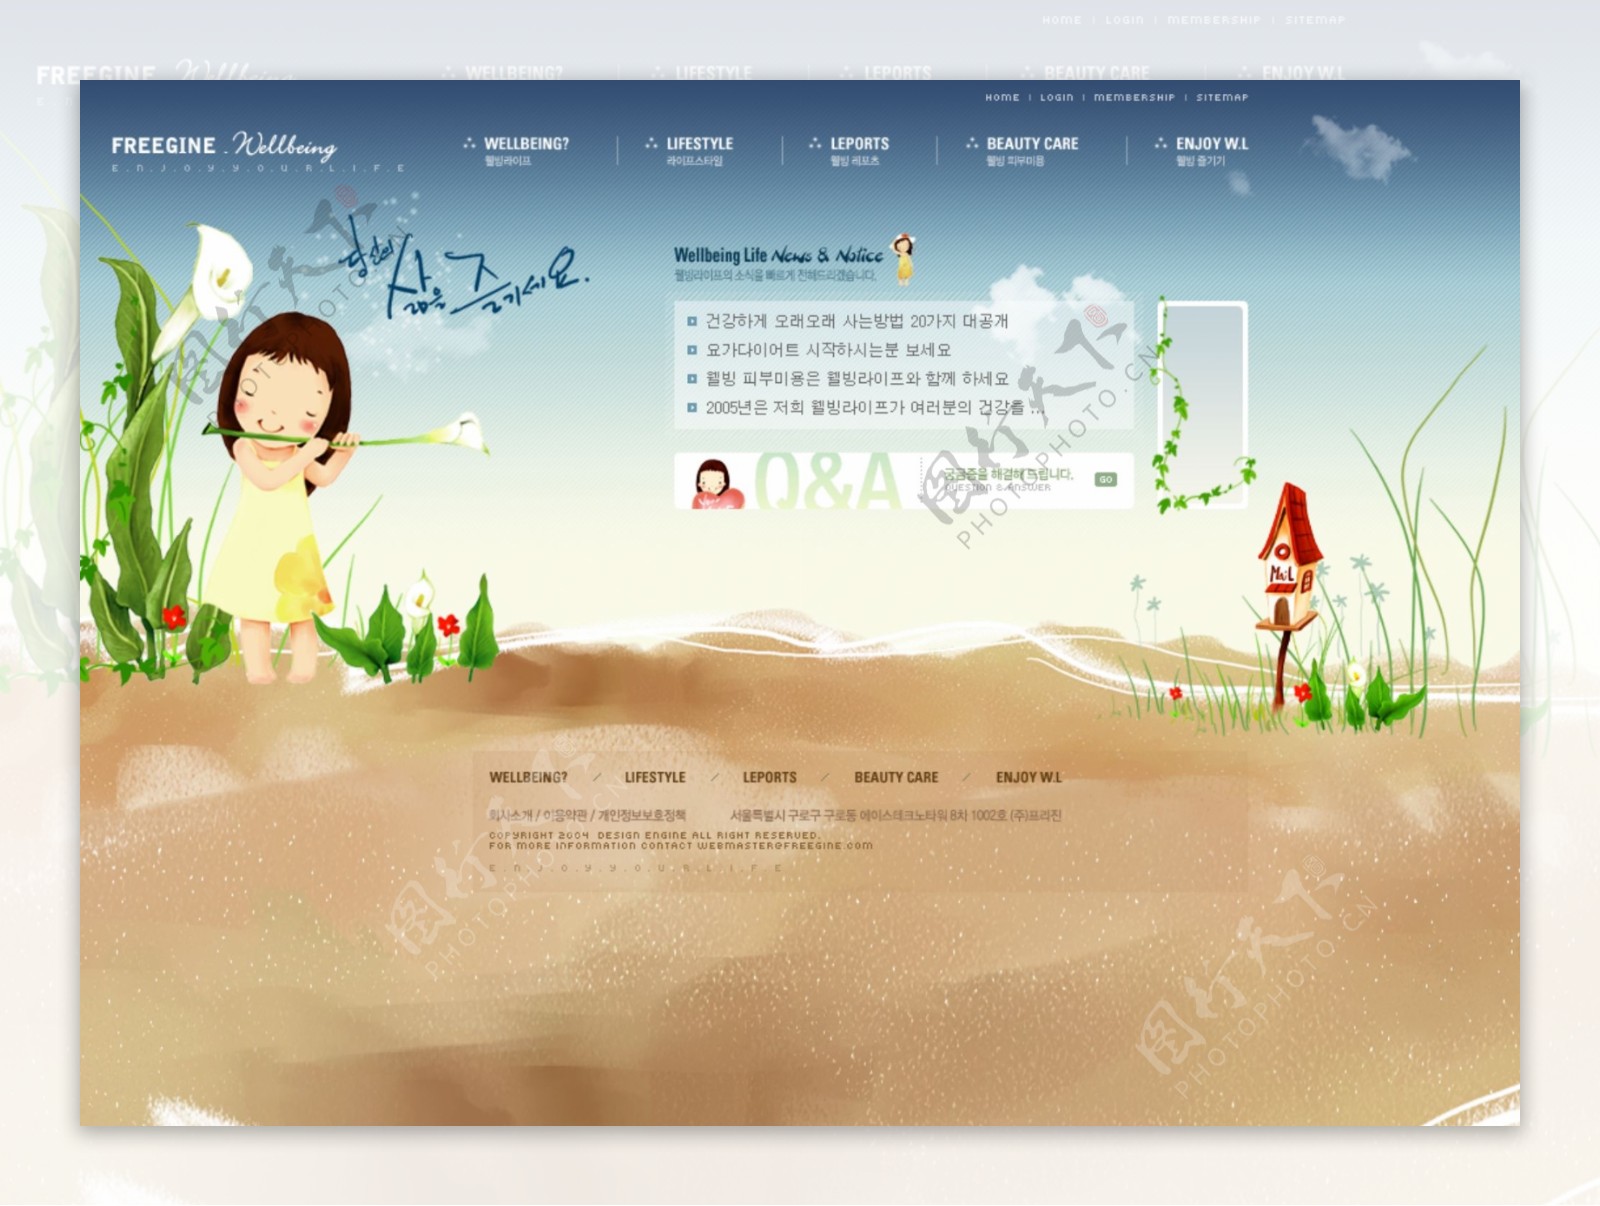 韩国幼儿音乐教育机构网站首页设图片